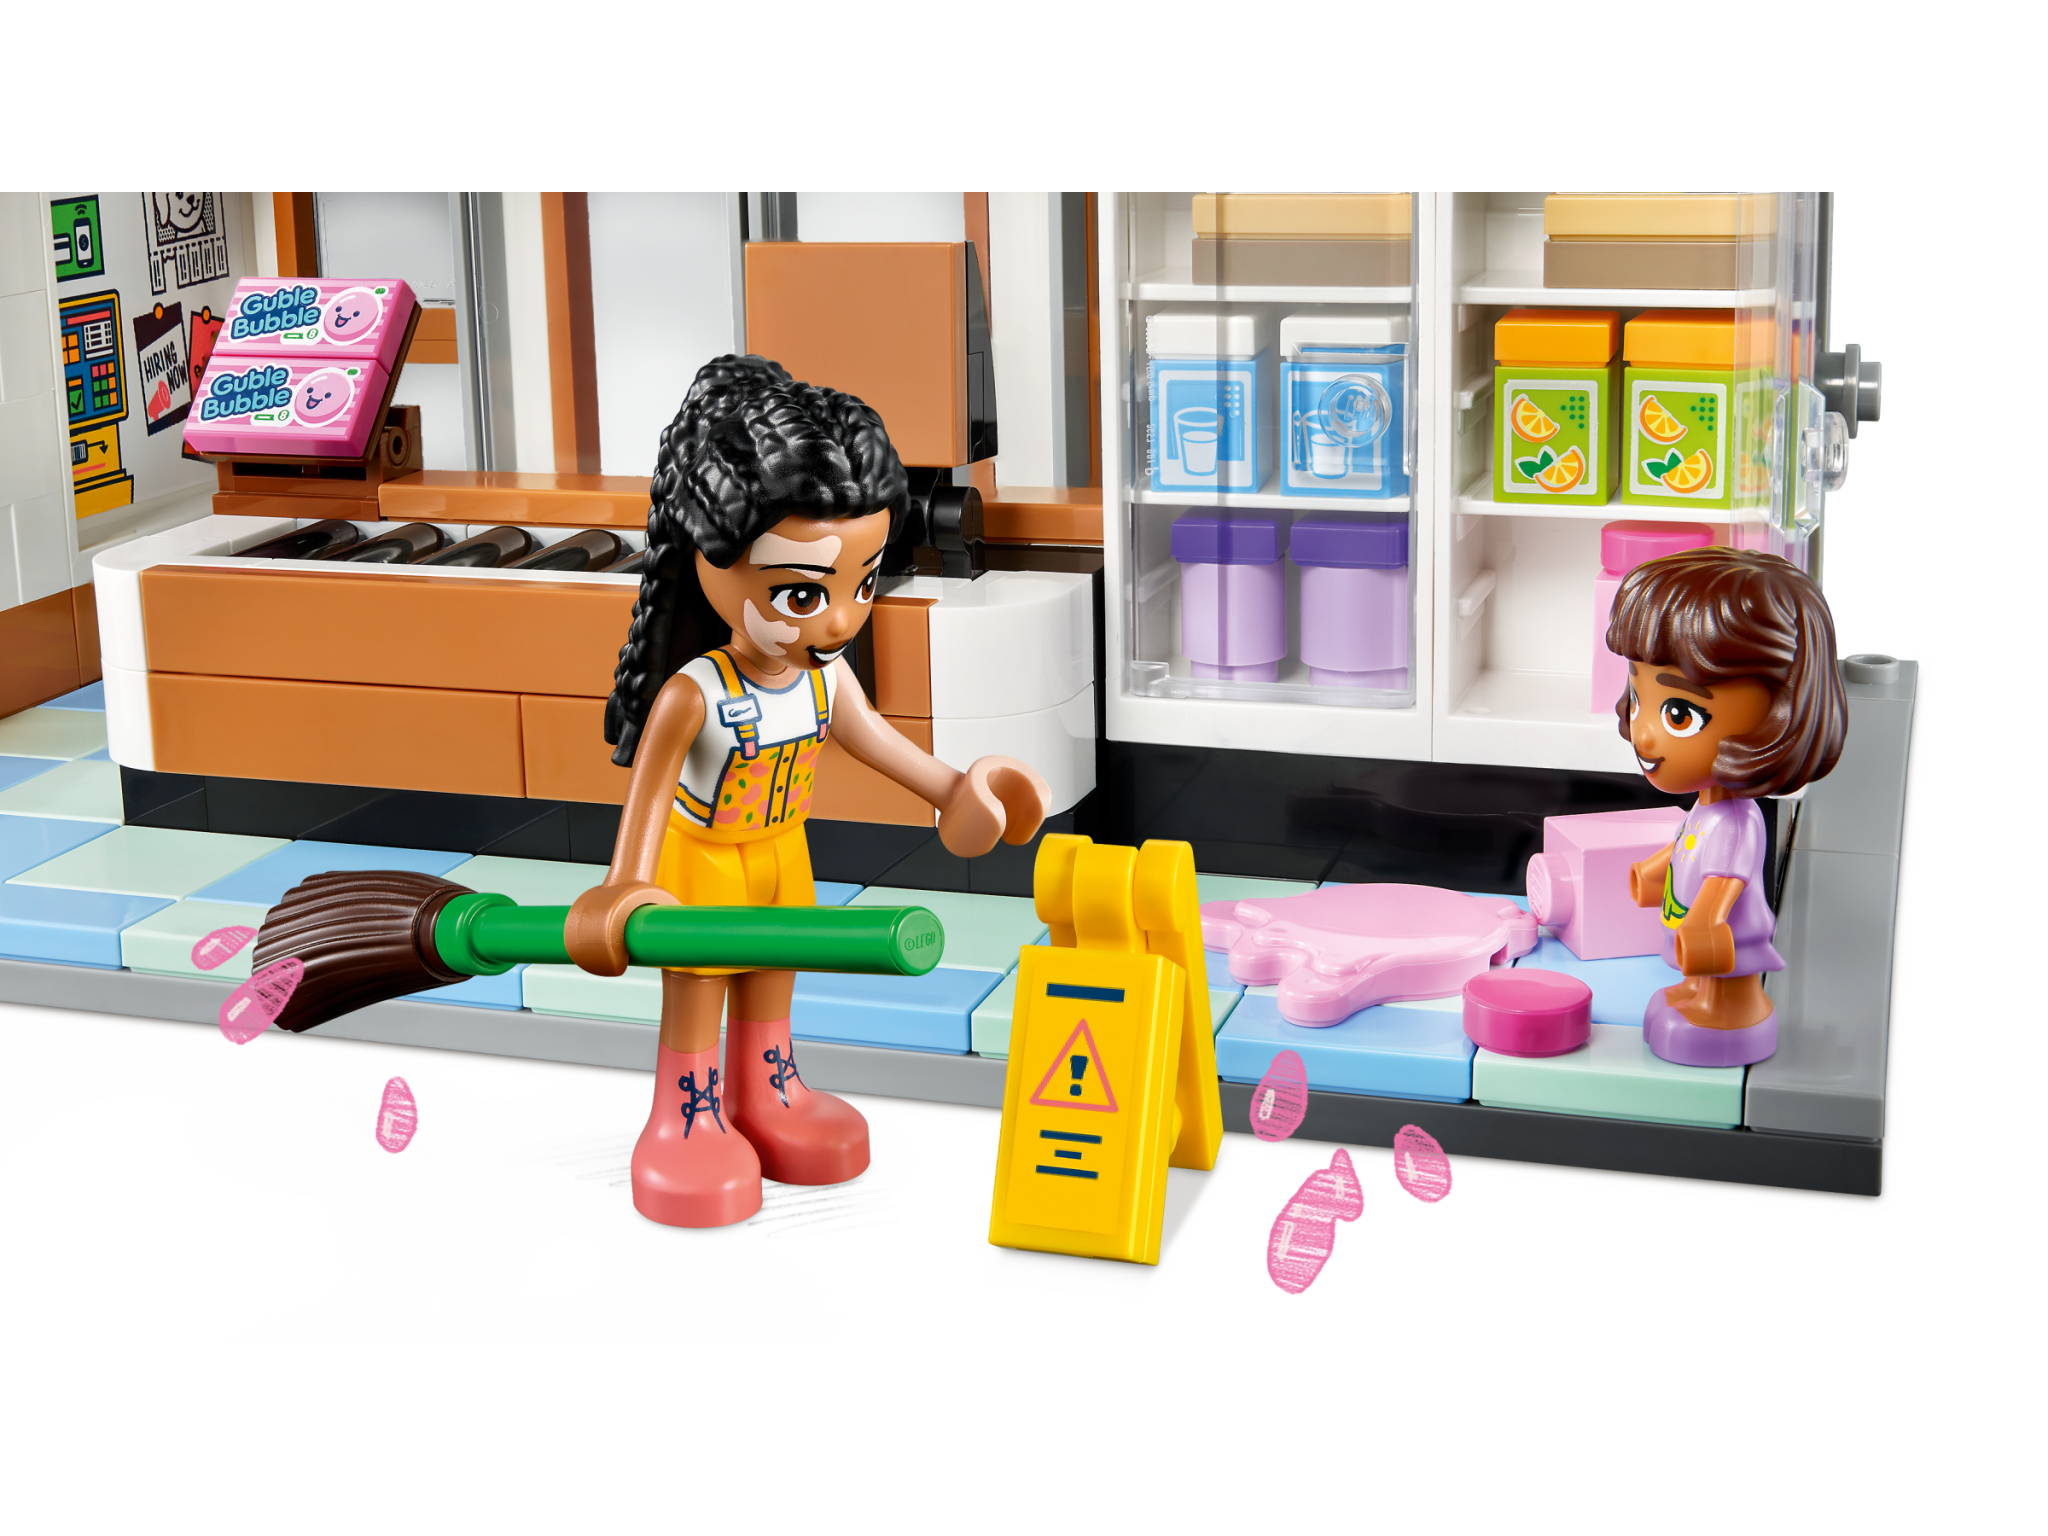 Lego Friends - Épicerie Bio 41729 jeu de construction